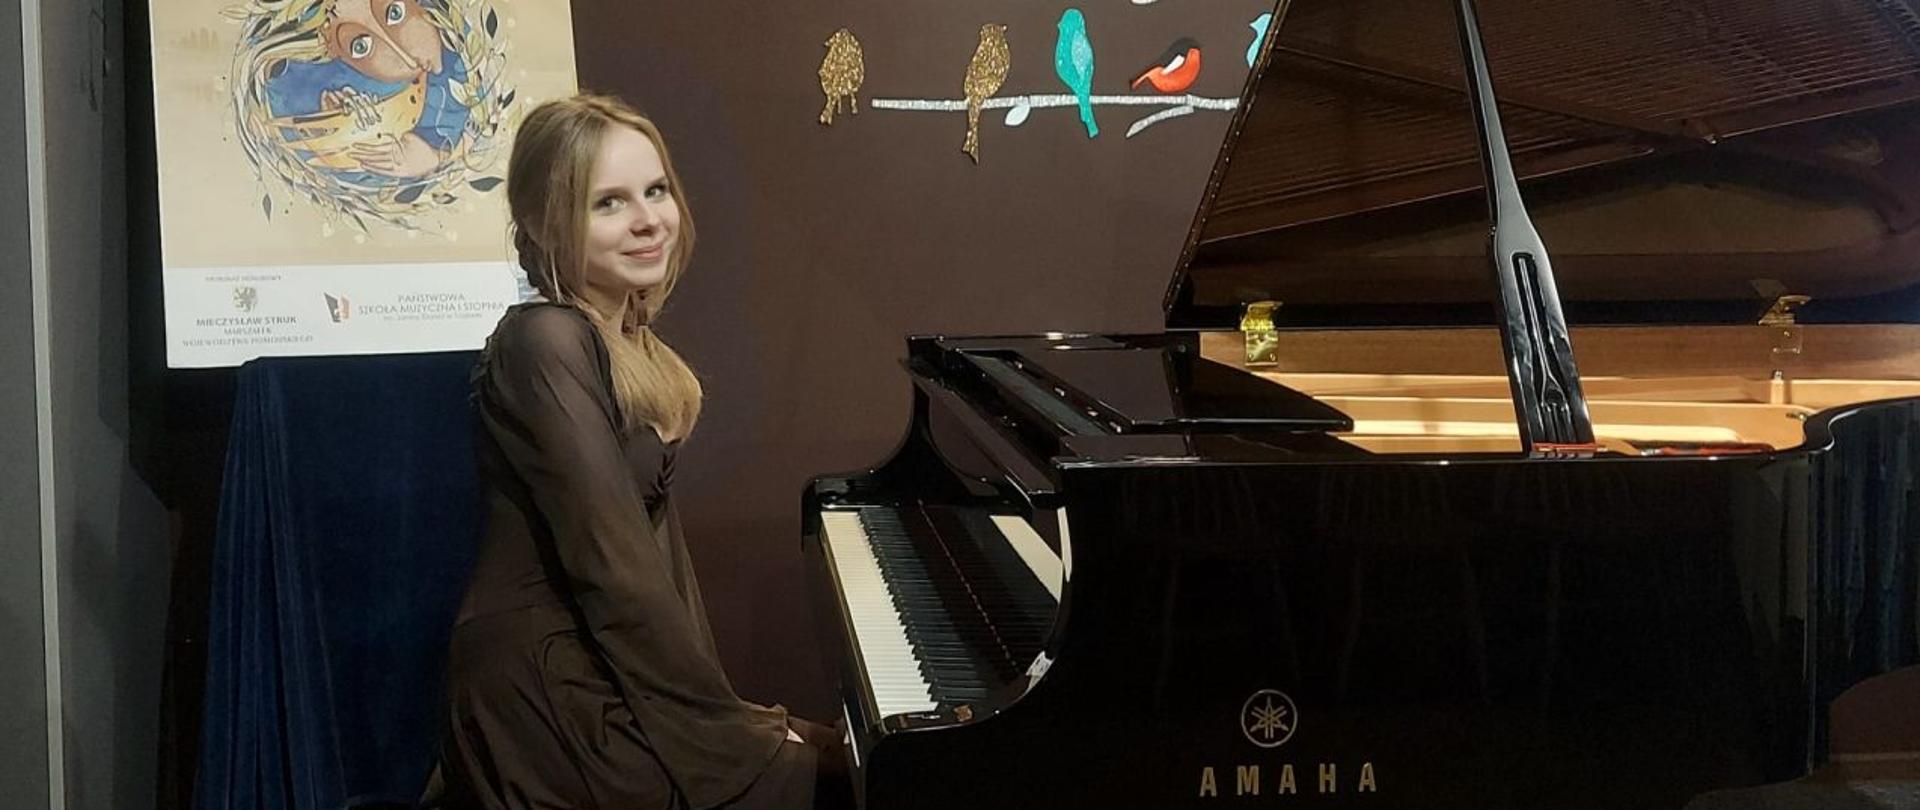 Zdjęcie kolorowe. Dziewczyna o blond włosach ubrana w brązową sukienkę siedzi przy fortepianie 